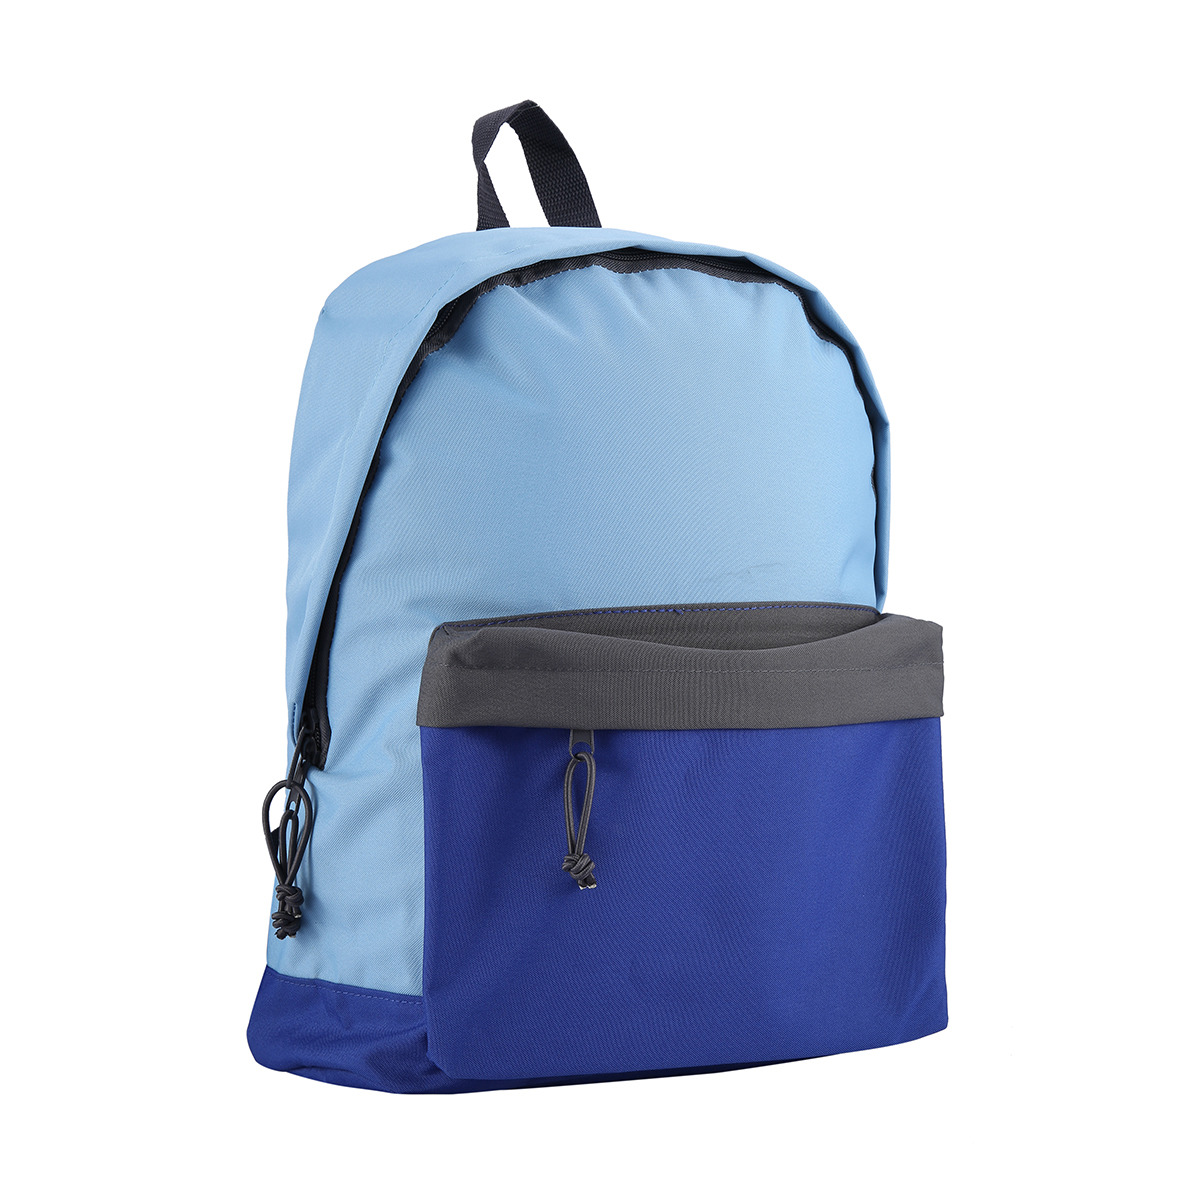 Junior Backpack - Blue | Kmart